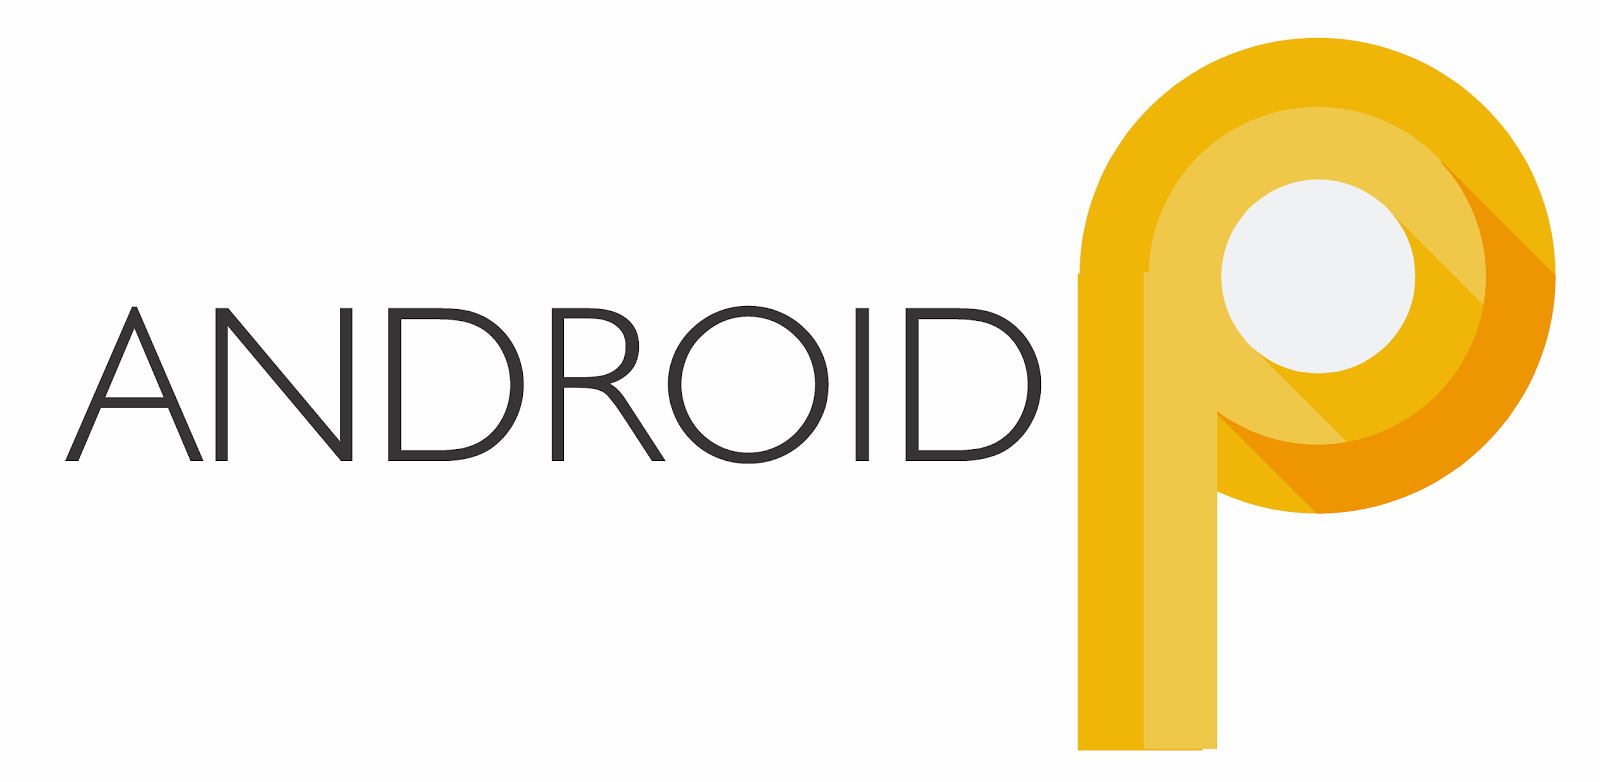 Android 9.0 P özel ‘Dark’ moduyla geliyor!